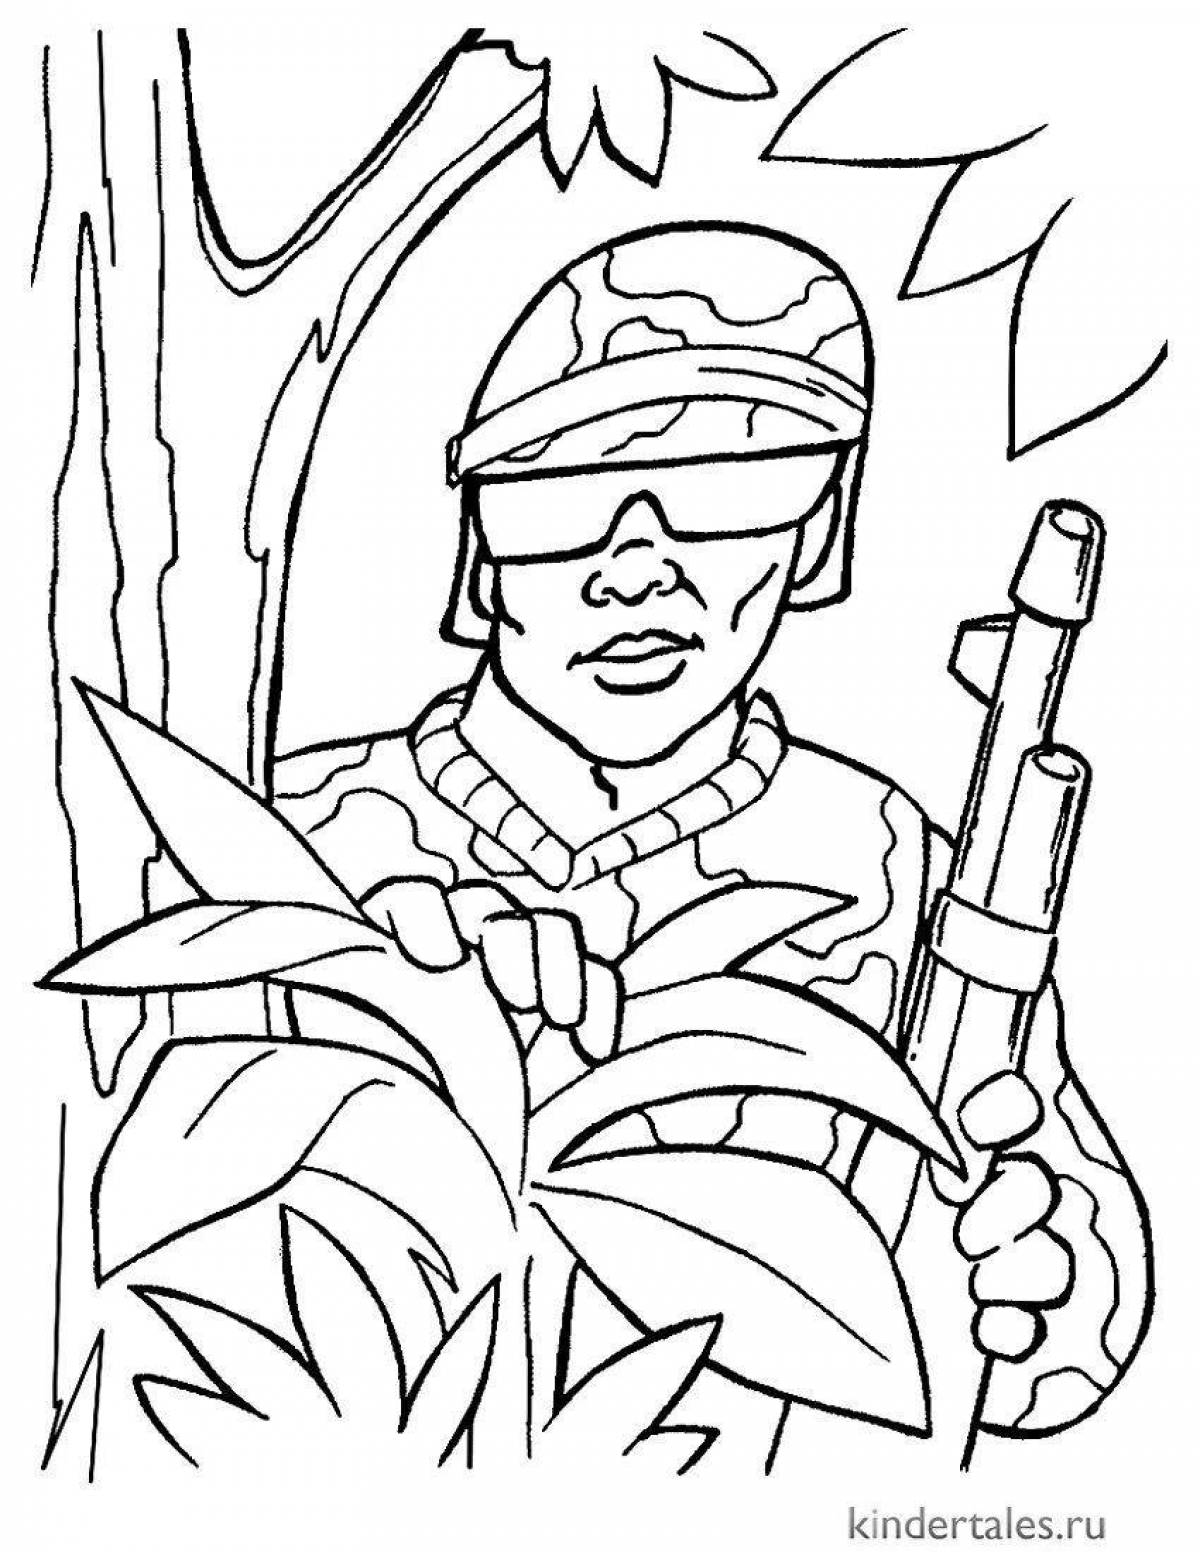 Динамический рисунок солдата для детей